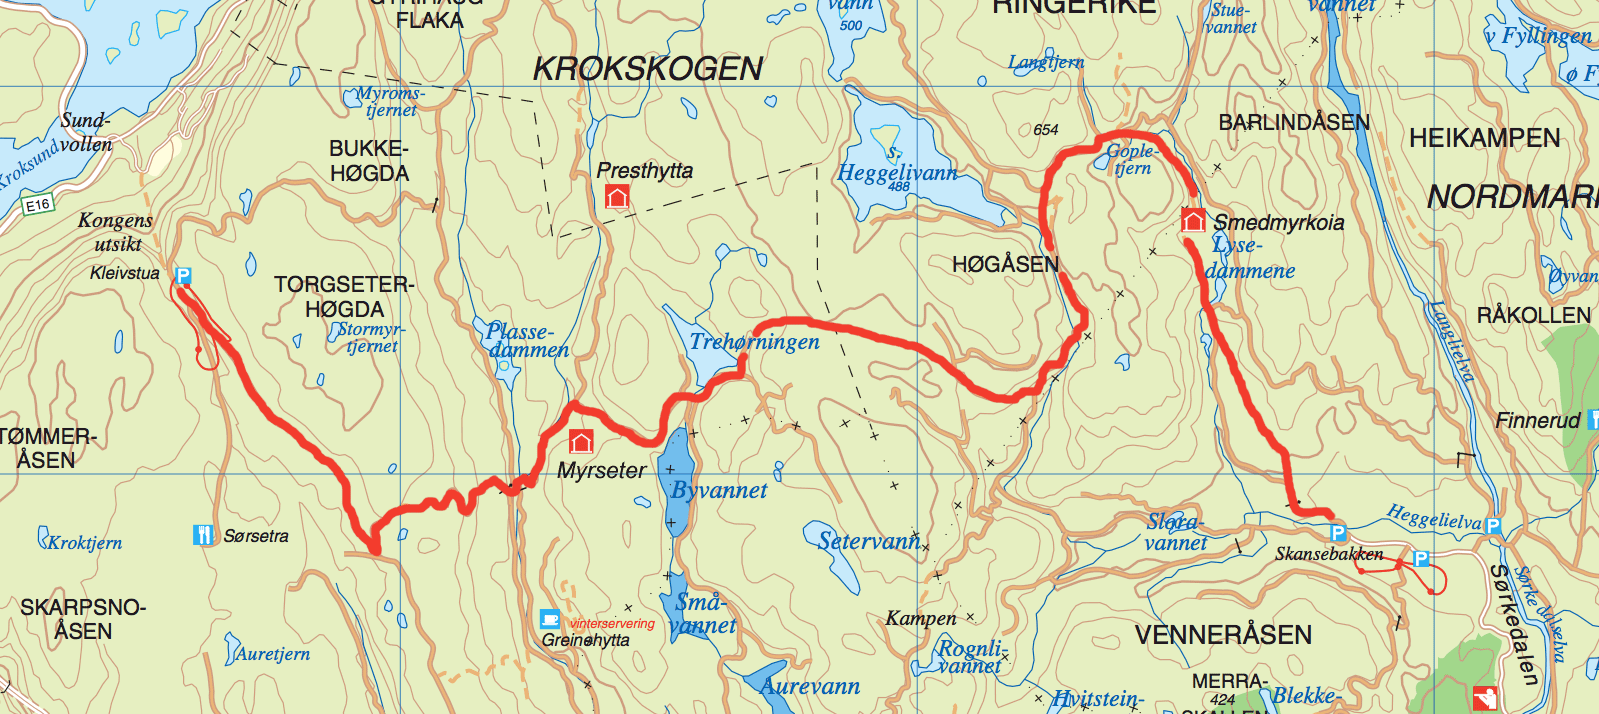 230415-krokskogen-map